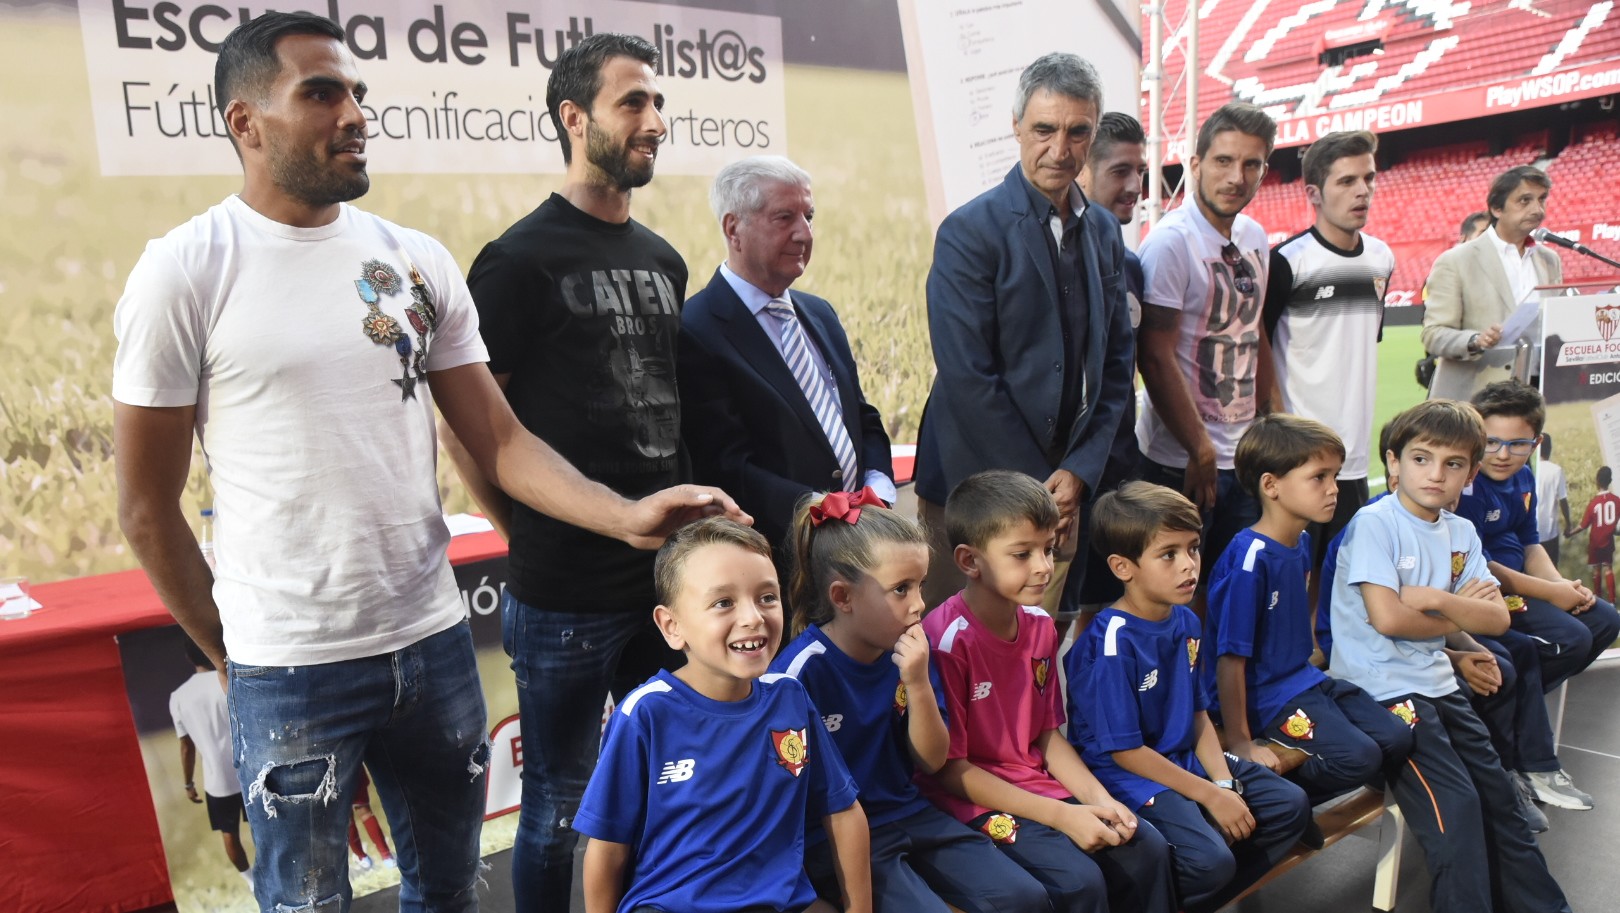 Presentación de la décima temporada de la Escuela de Football Antonio Puerta